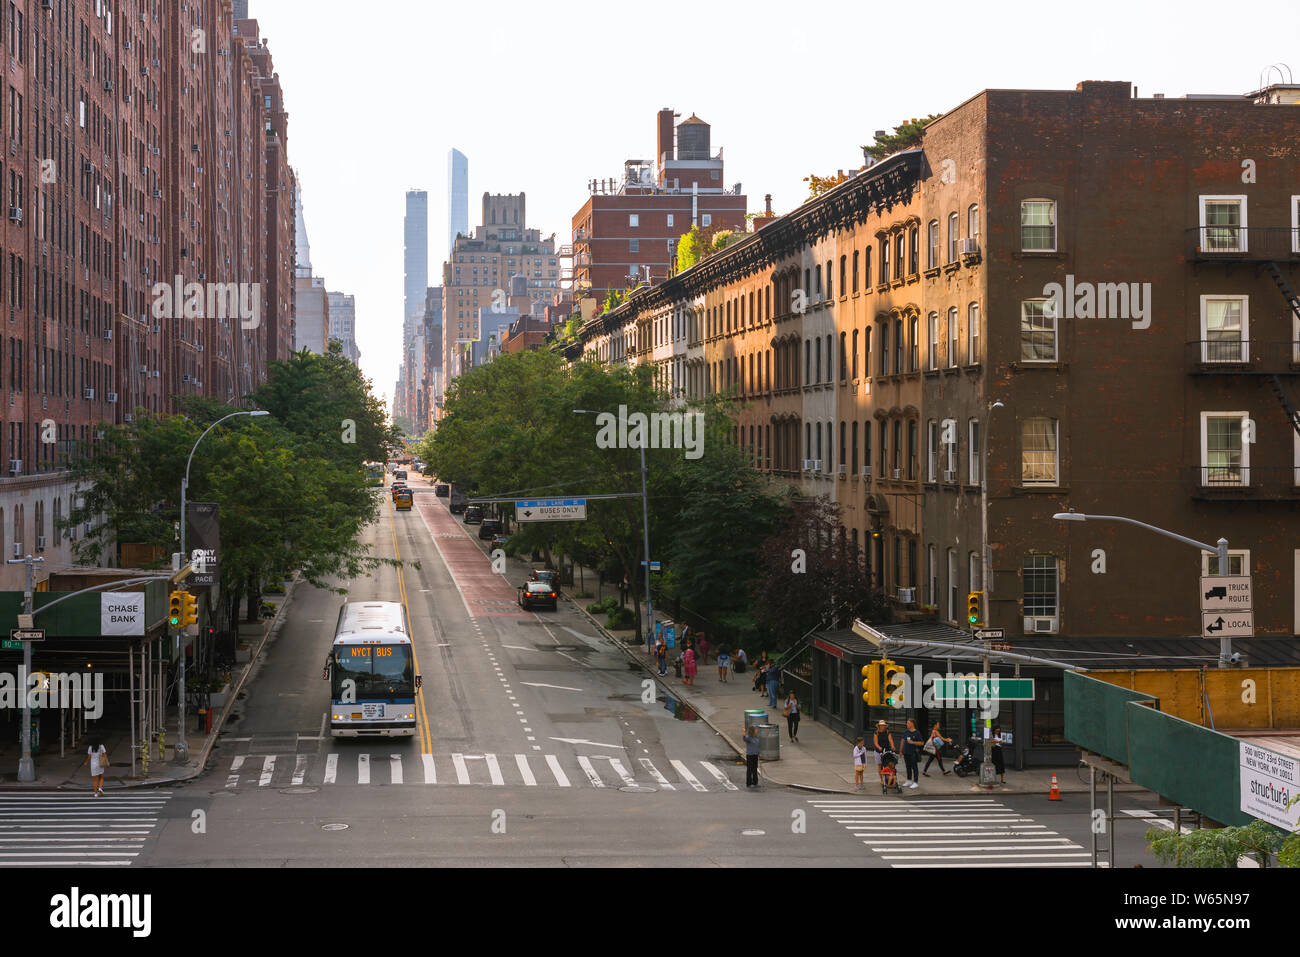 West 23rd Street, vista en verano de la intersección de West 23rd Street y 10th Avenue en el área de Chelsea de Manhattan, Nueva York, Estados Unidos Foto de stock